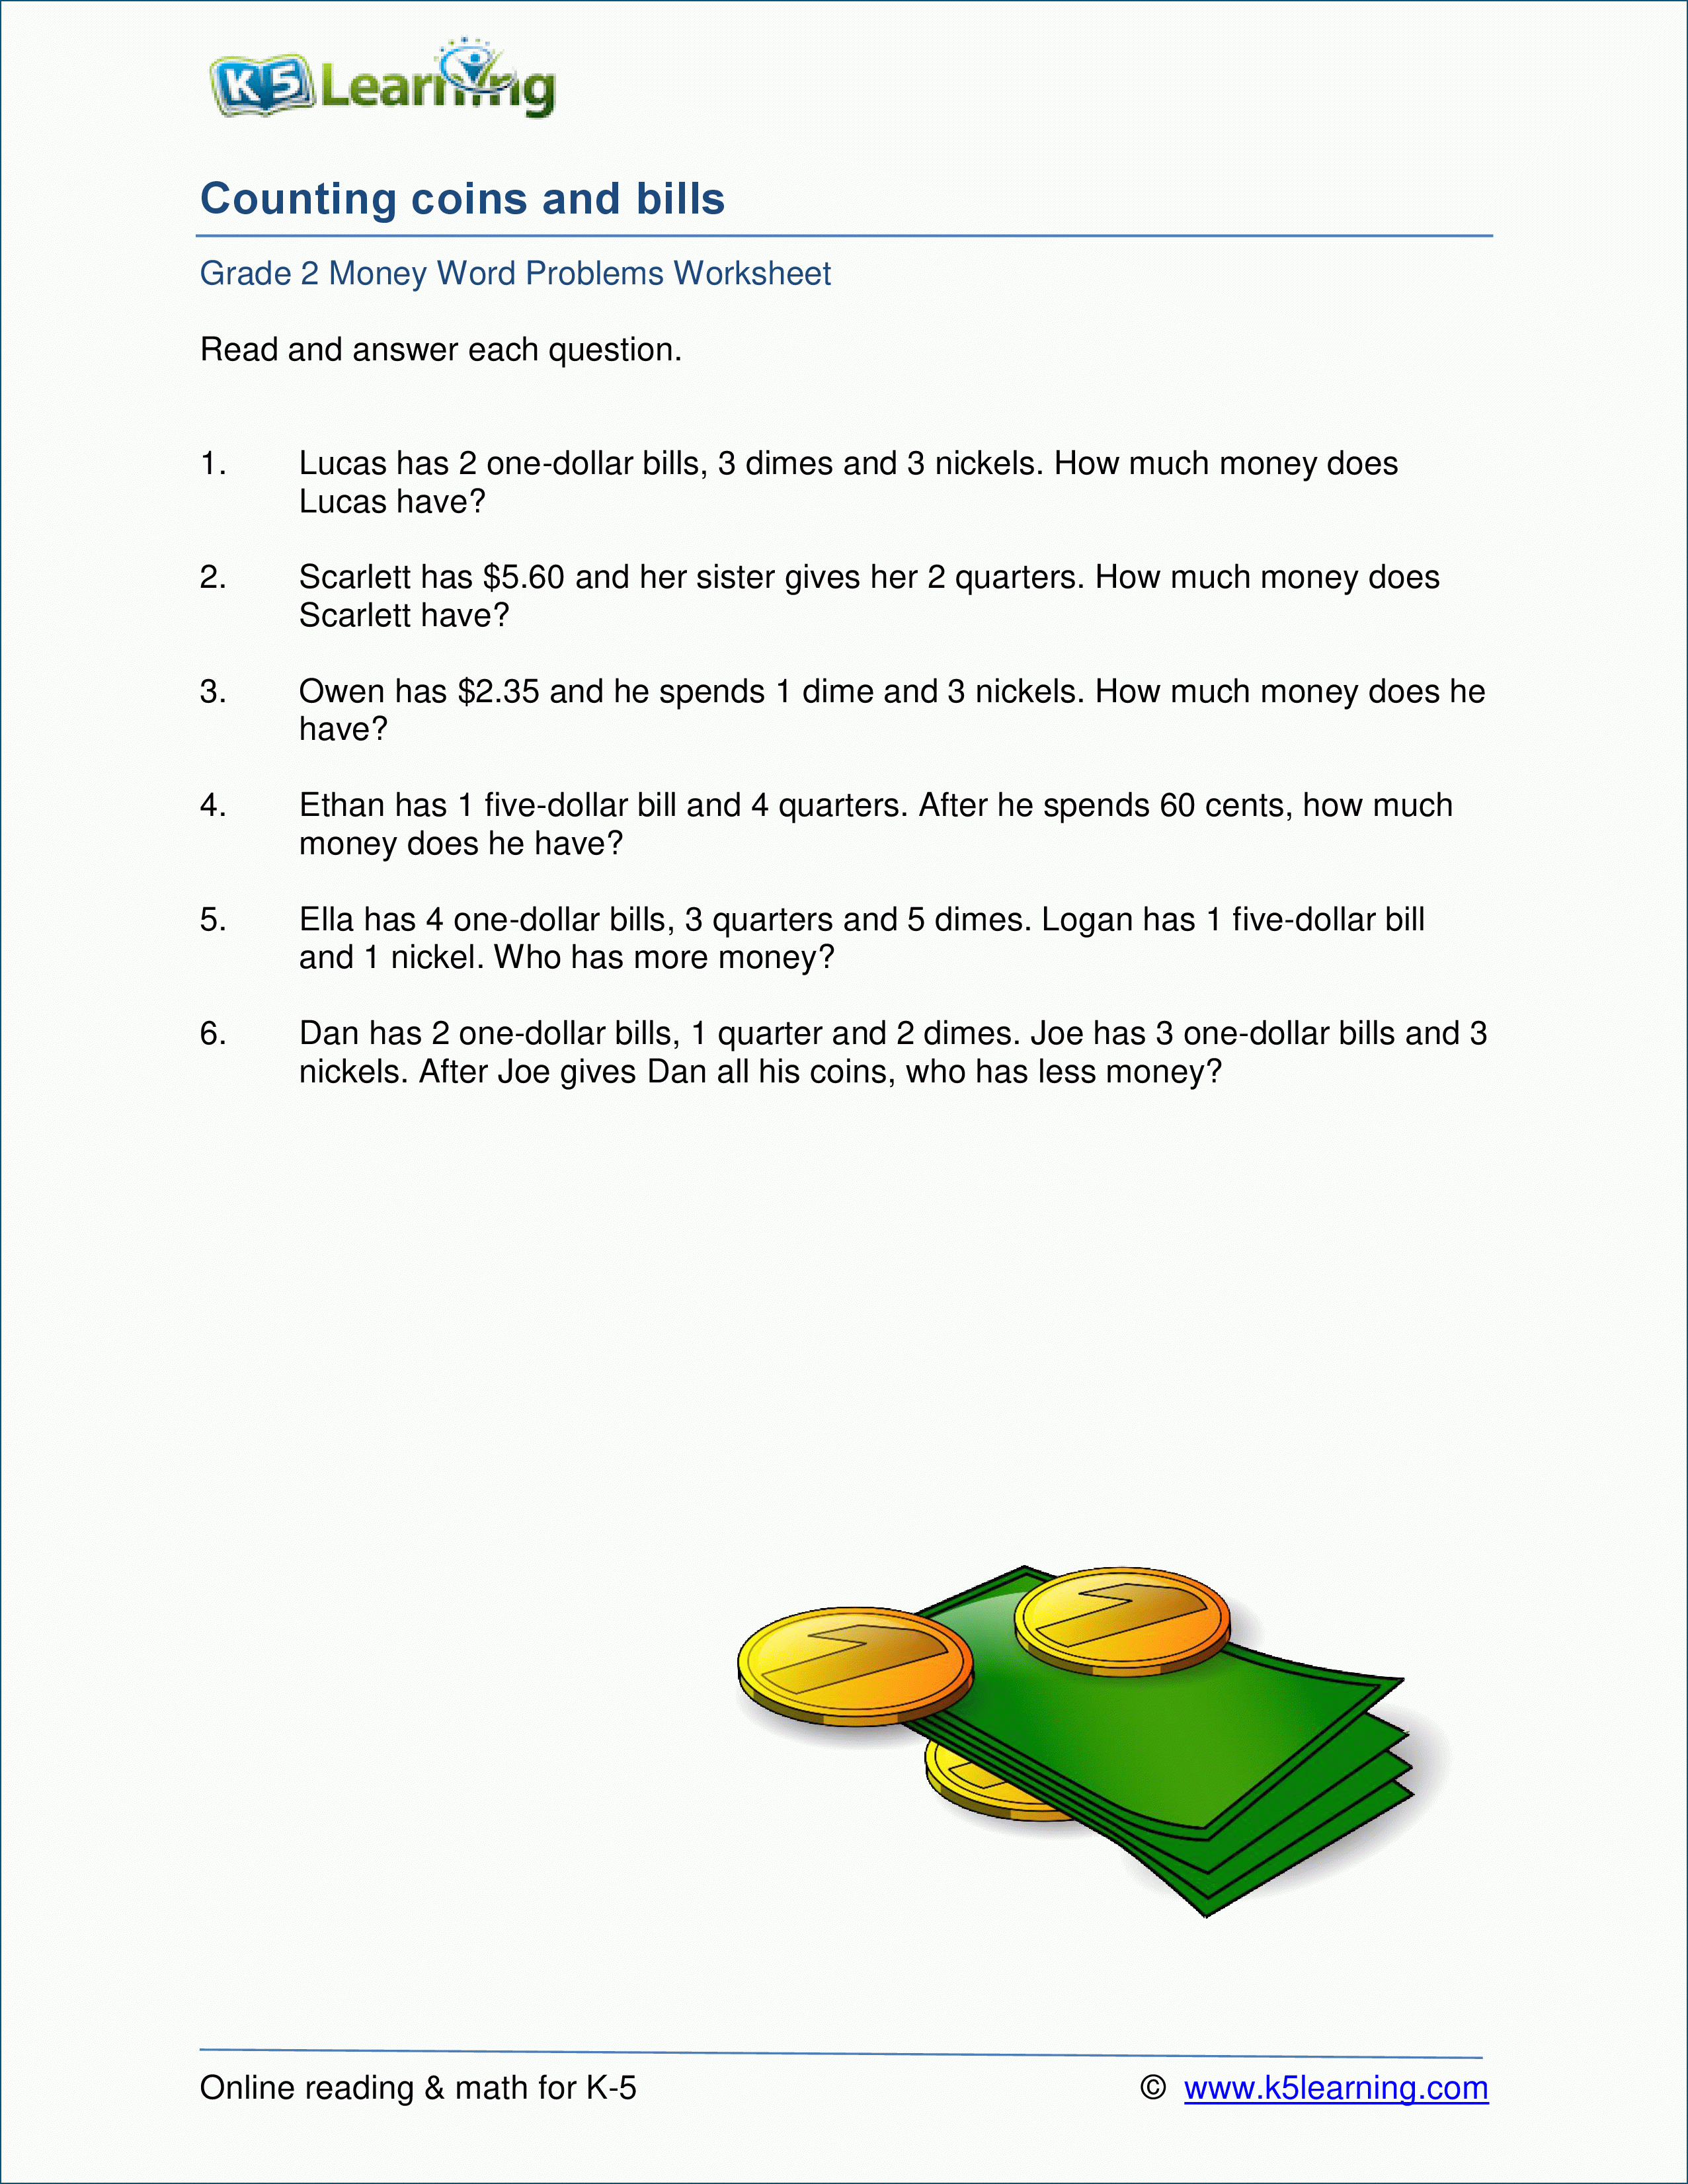 Grade 2 Money Word Problem Worksheets  K5 Learning As Well As Money Word Problems Worksheets